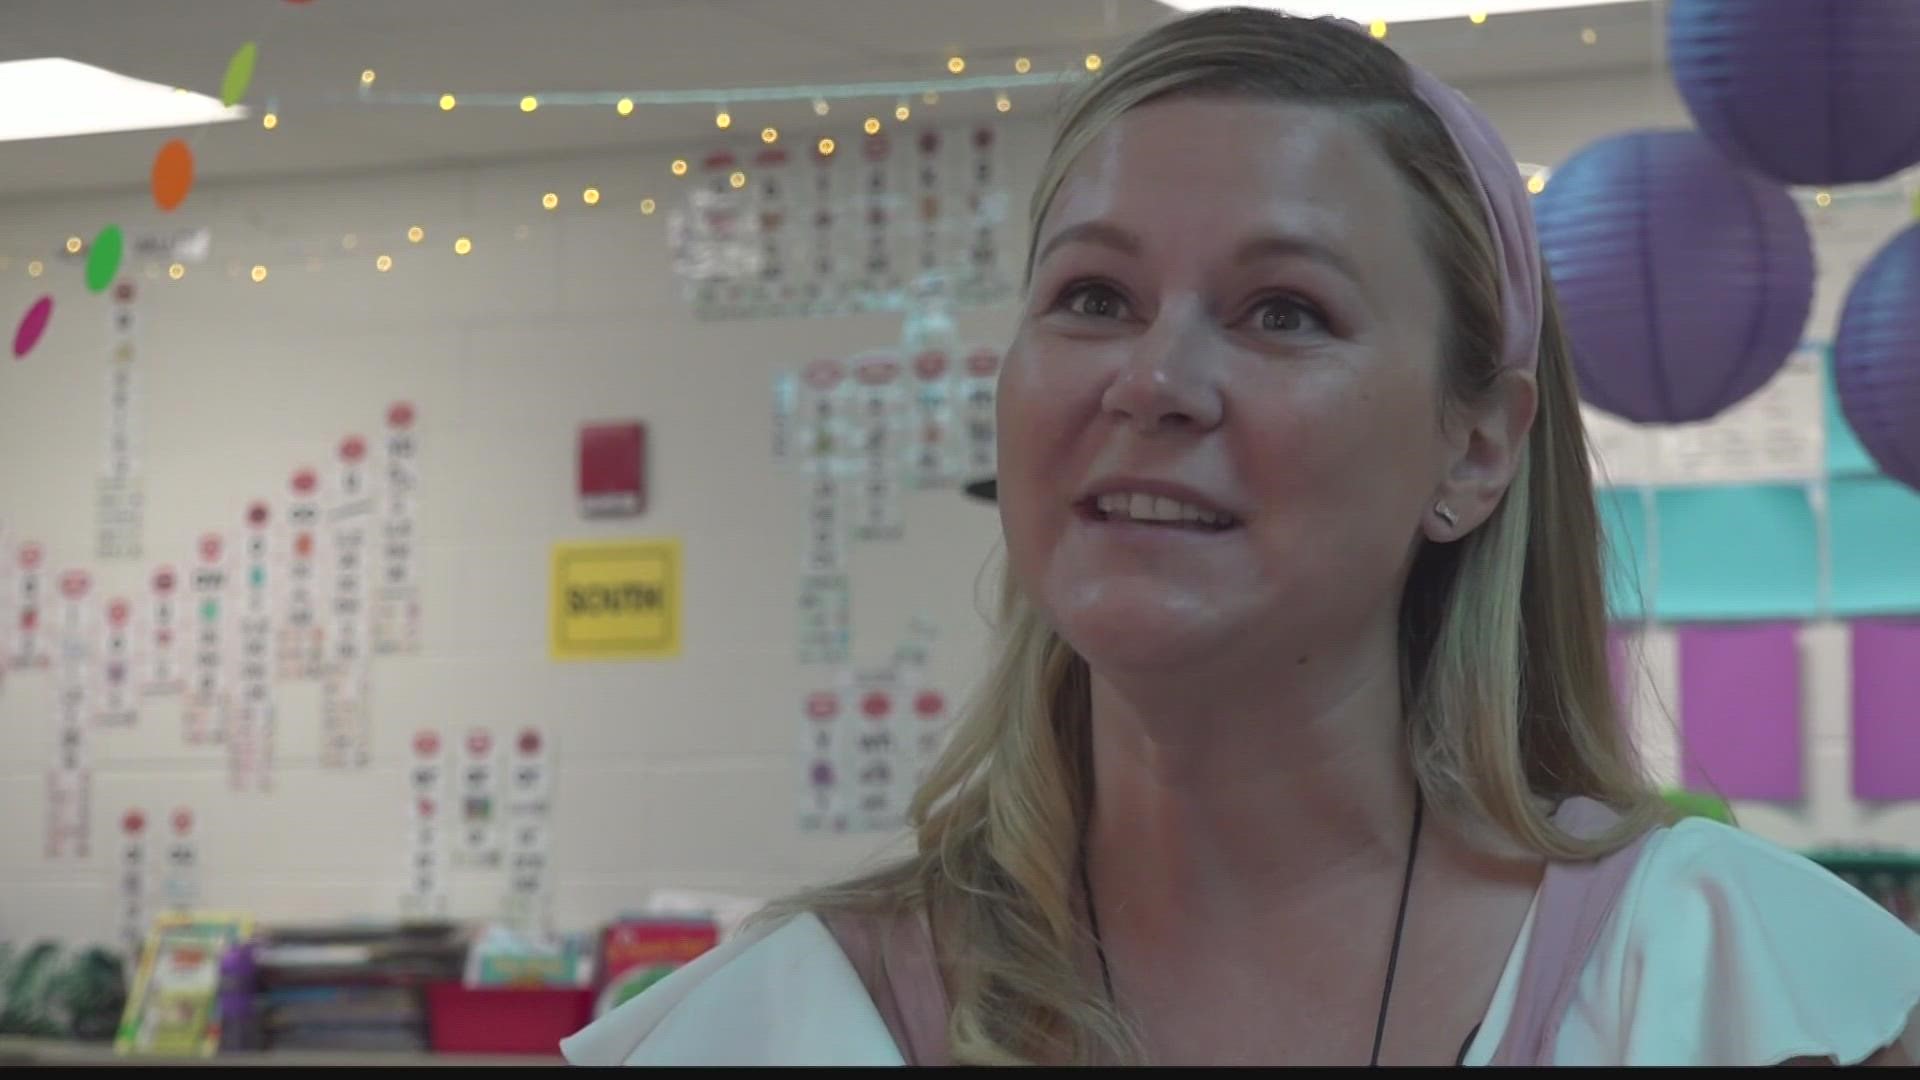 Ms. Corinna Ballard is a first grade teacher at Wildlight Elementary.